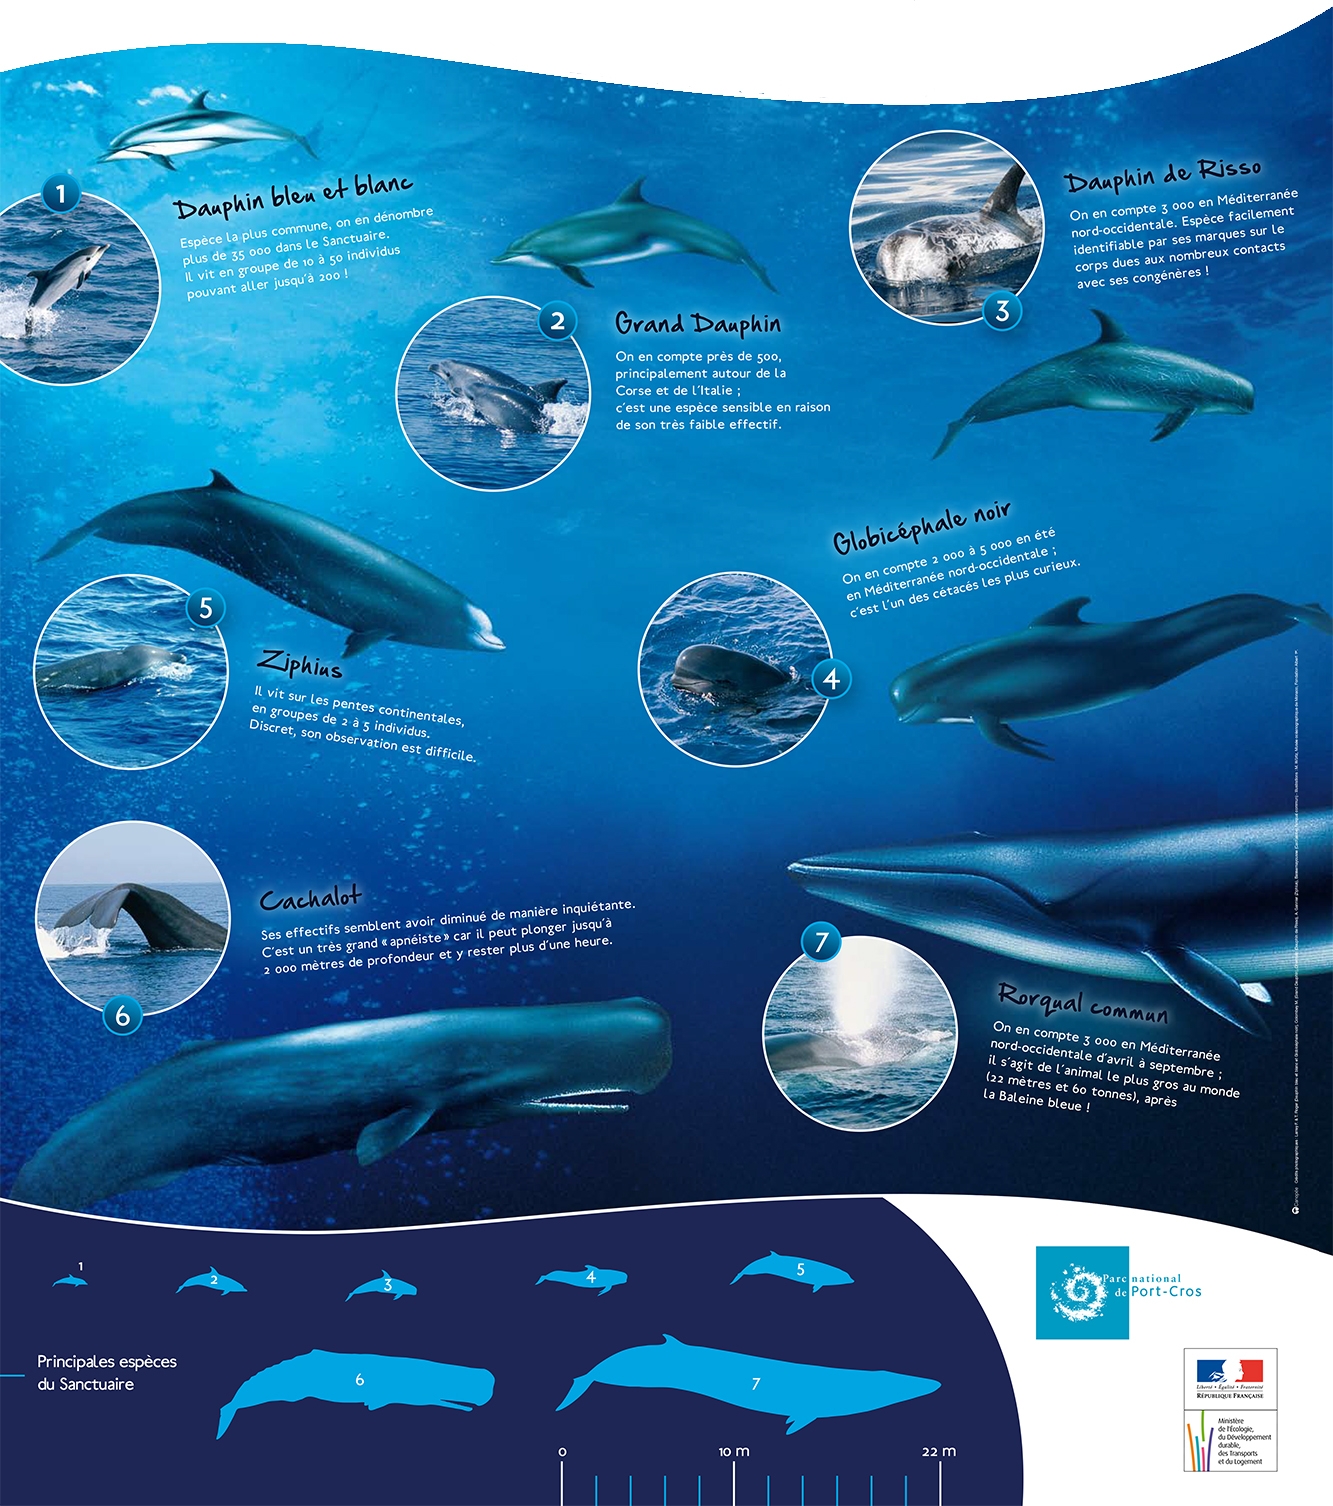 observation dauphins et cétacés en méditerranée2